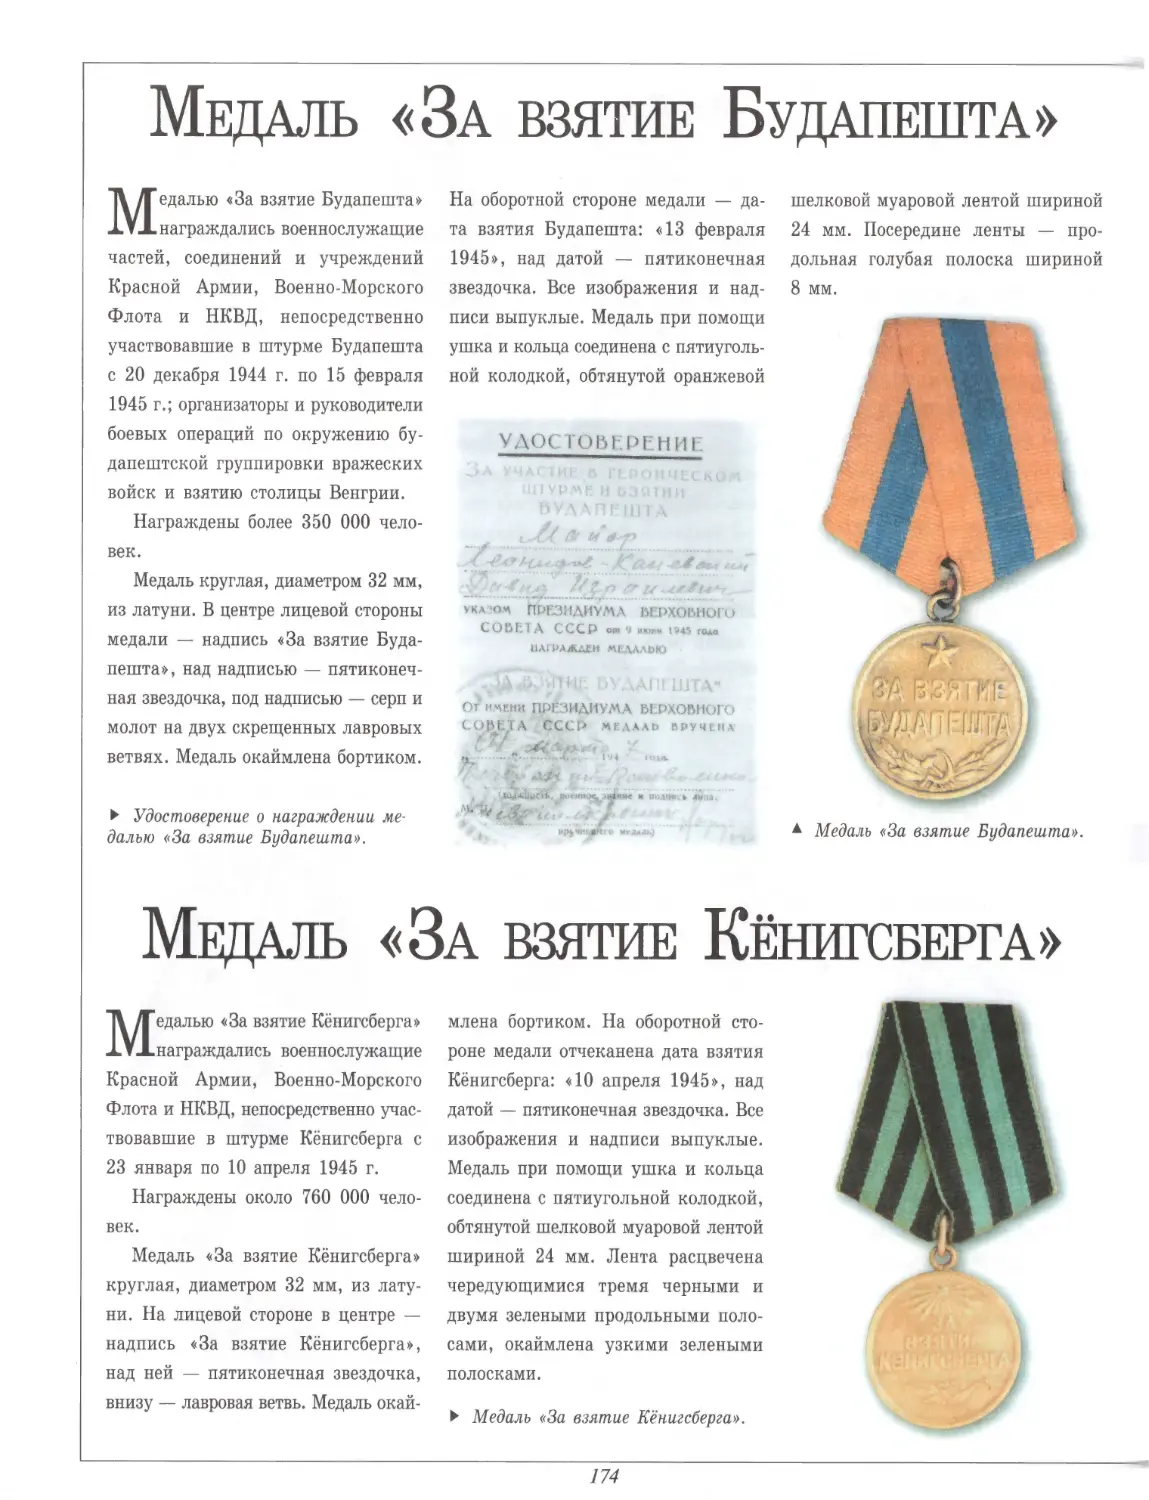 Медаль «За взятие Будапешта»
Медаль «За взятие Кёнигсберга»